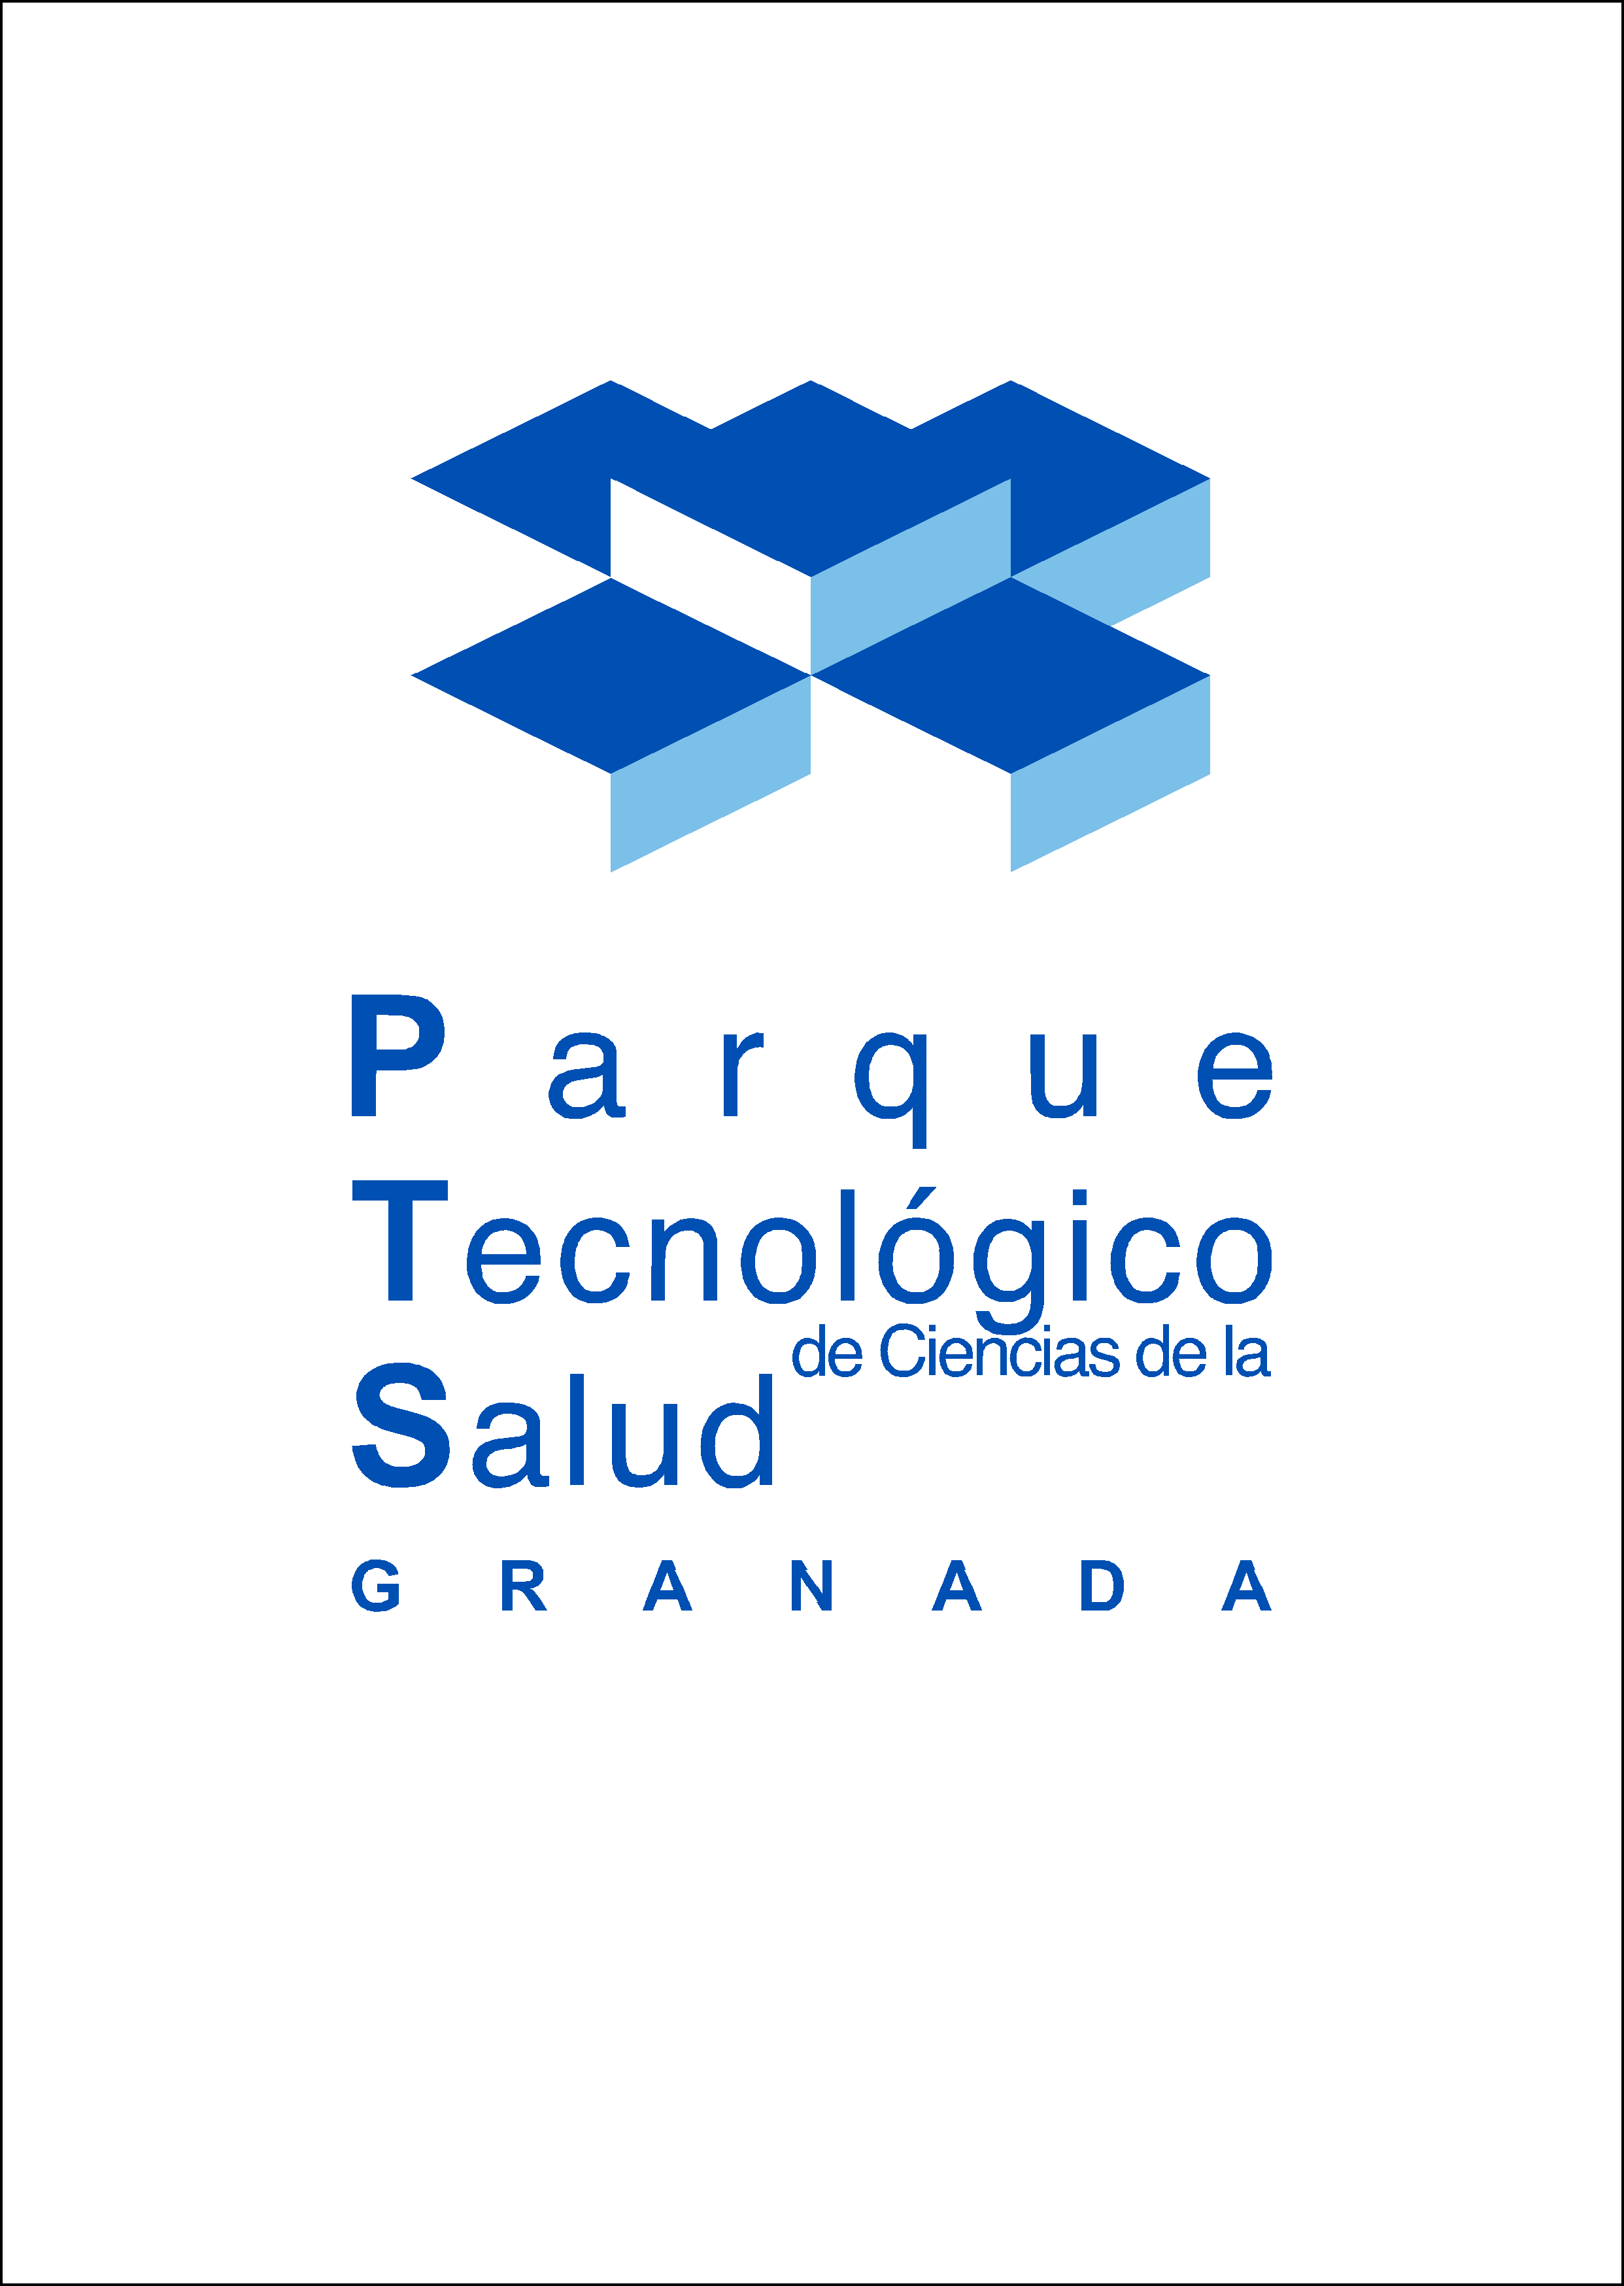 FUNDACION PARQUE TECNOLOGICO DE CIENCIAS DE LA SALUD DE GRANADA.png